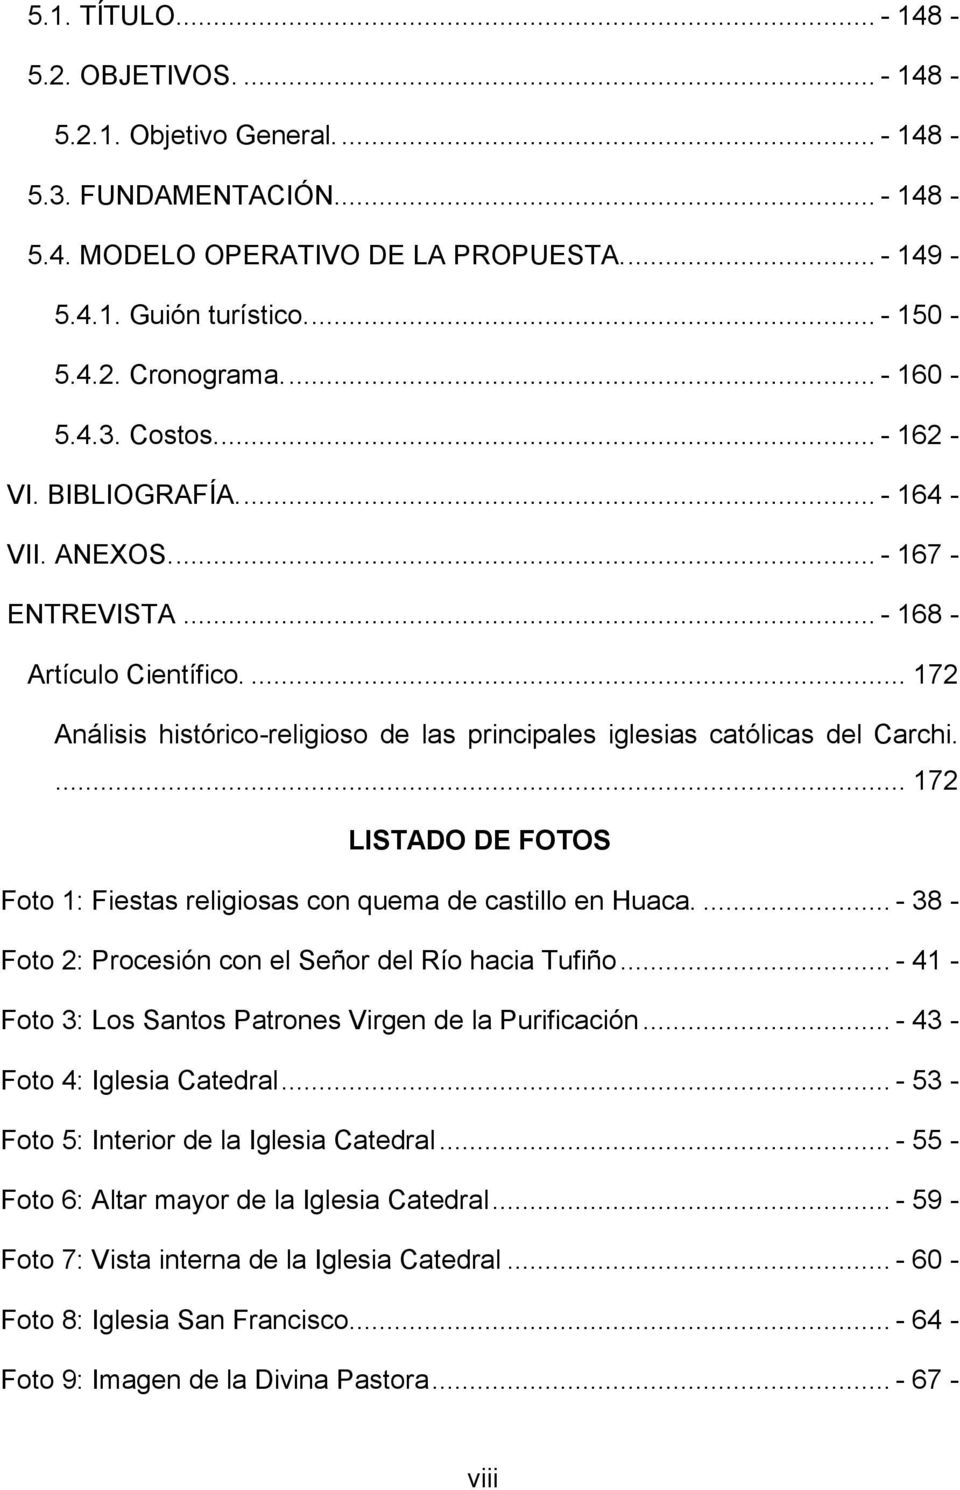 ... 172 Análisis histórico-religioso de las principales iglesias católicas del Carchi.... 172 LISTADO DE FOTOS Foto 1: Fiestas religiosas con quema de castillo en Huaca.